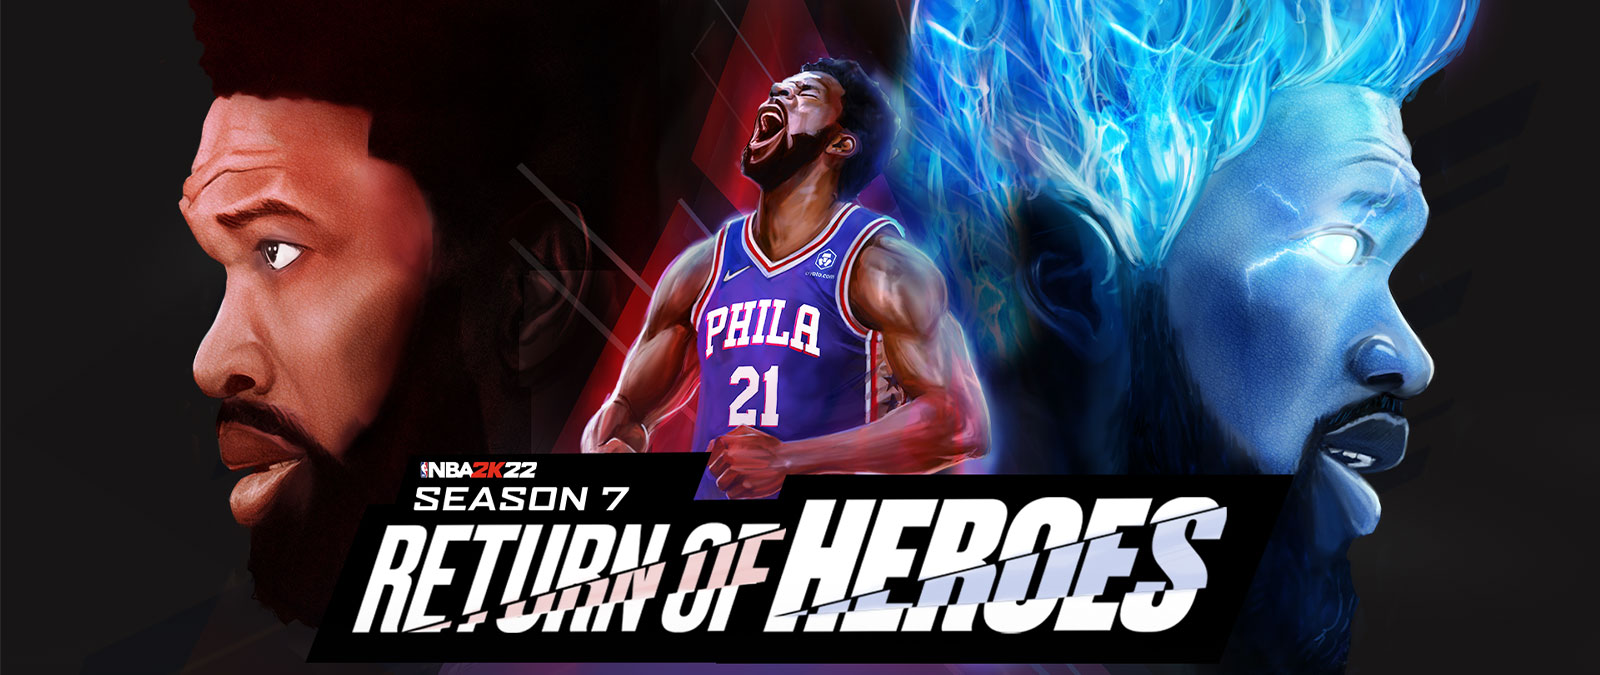 NBA 2K22, Saison 7, Le retour des héros, un joueur de Philadelphie crie en direction du ciel et prend de la puissance avec des flammes bleues.